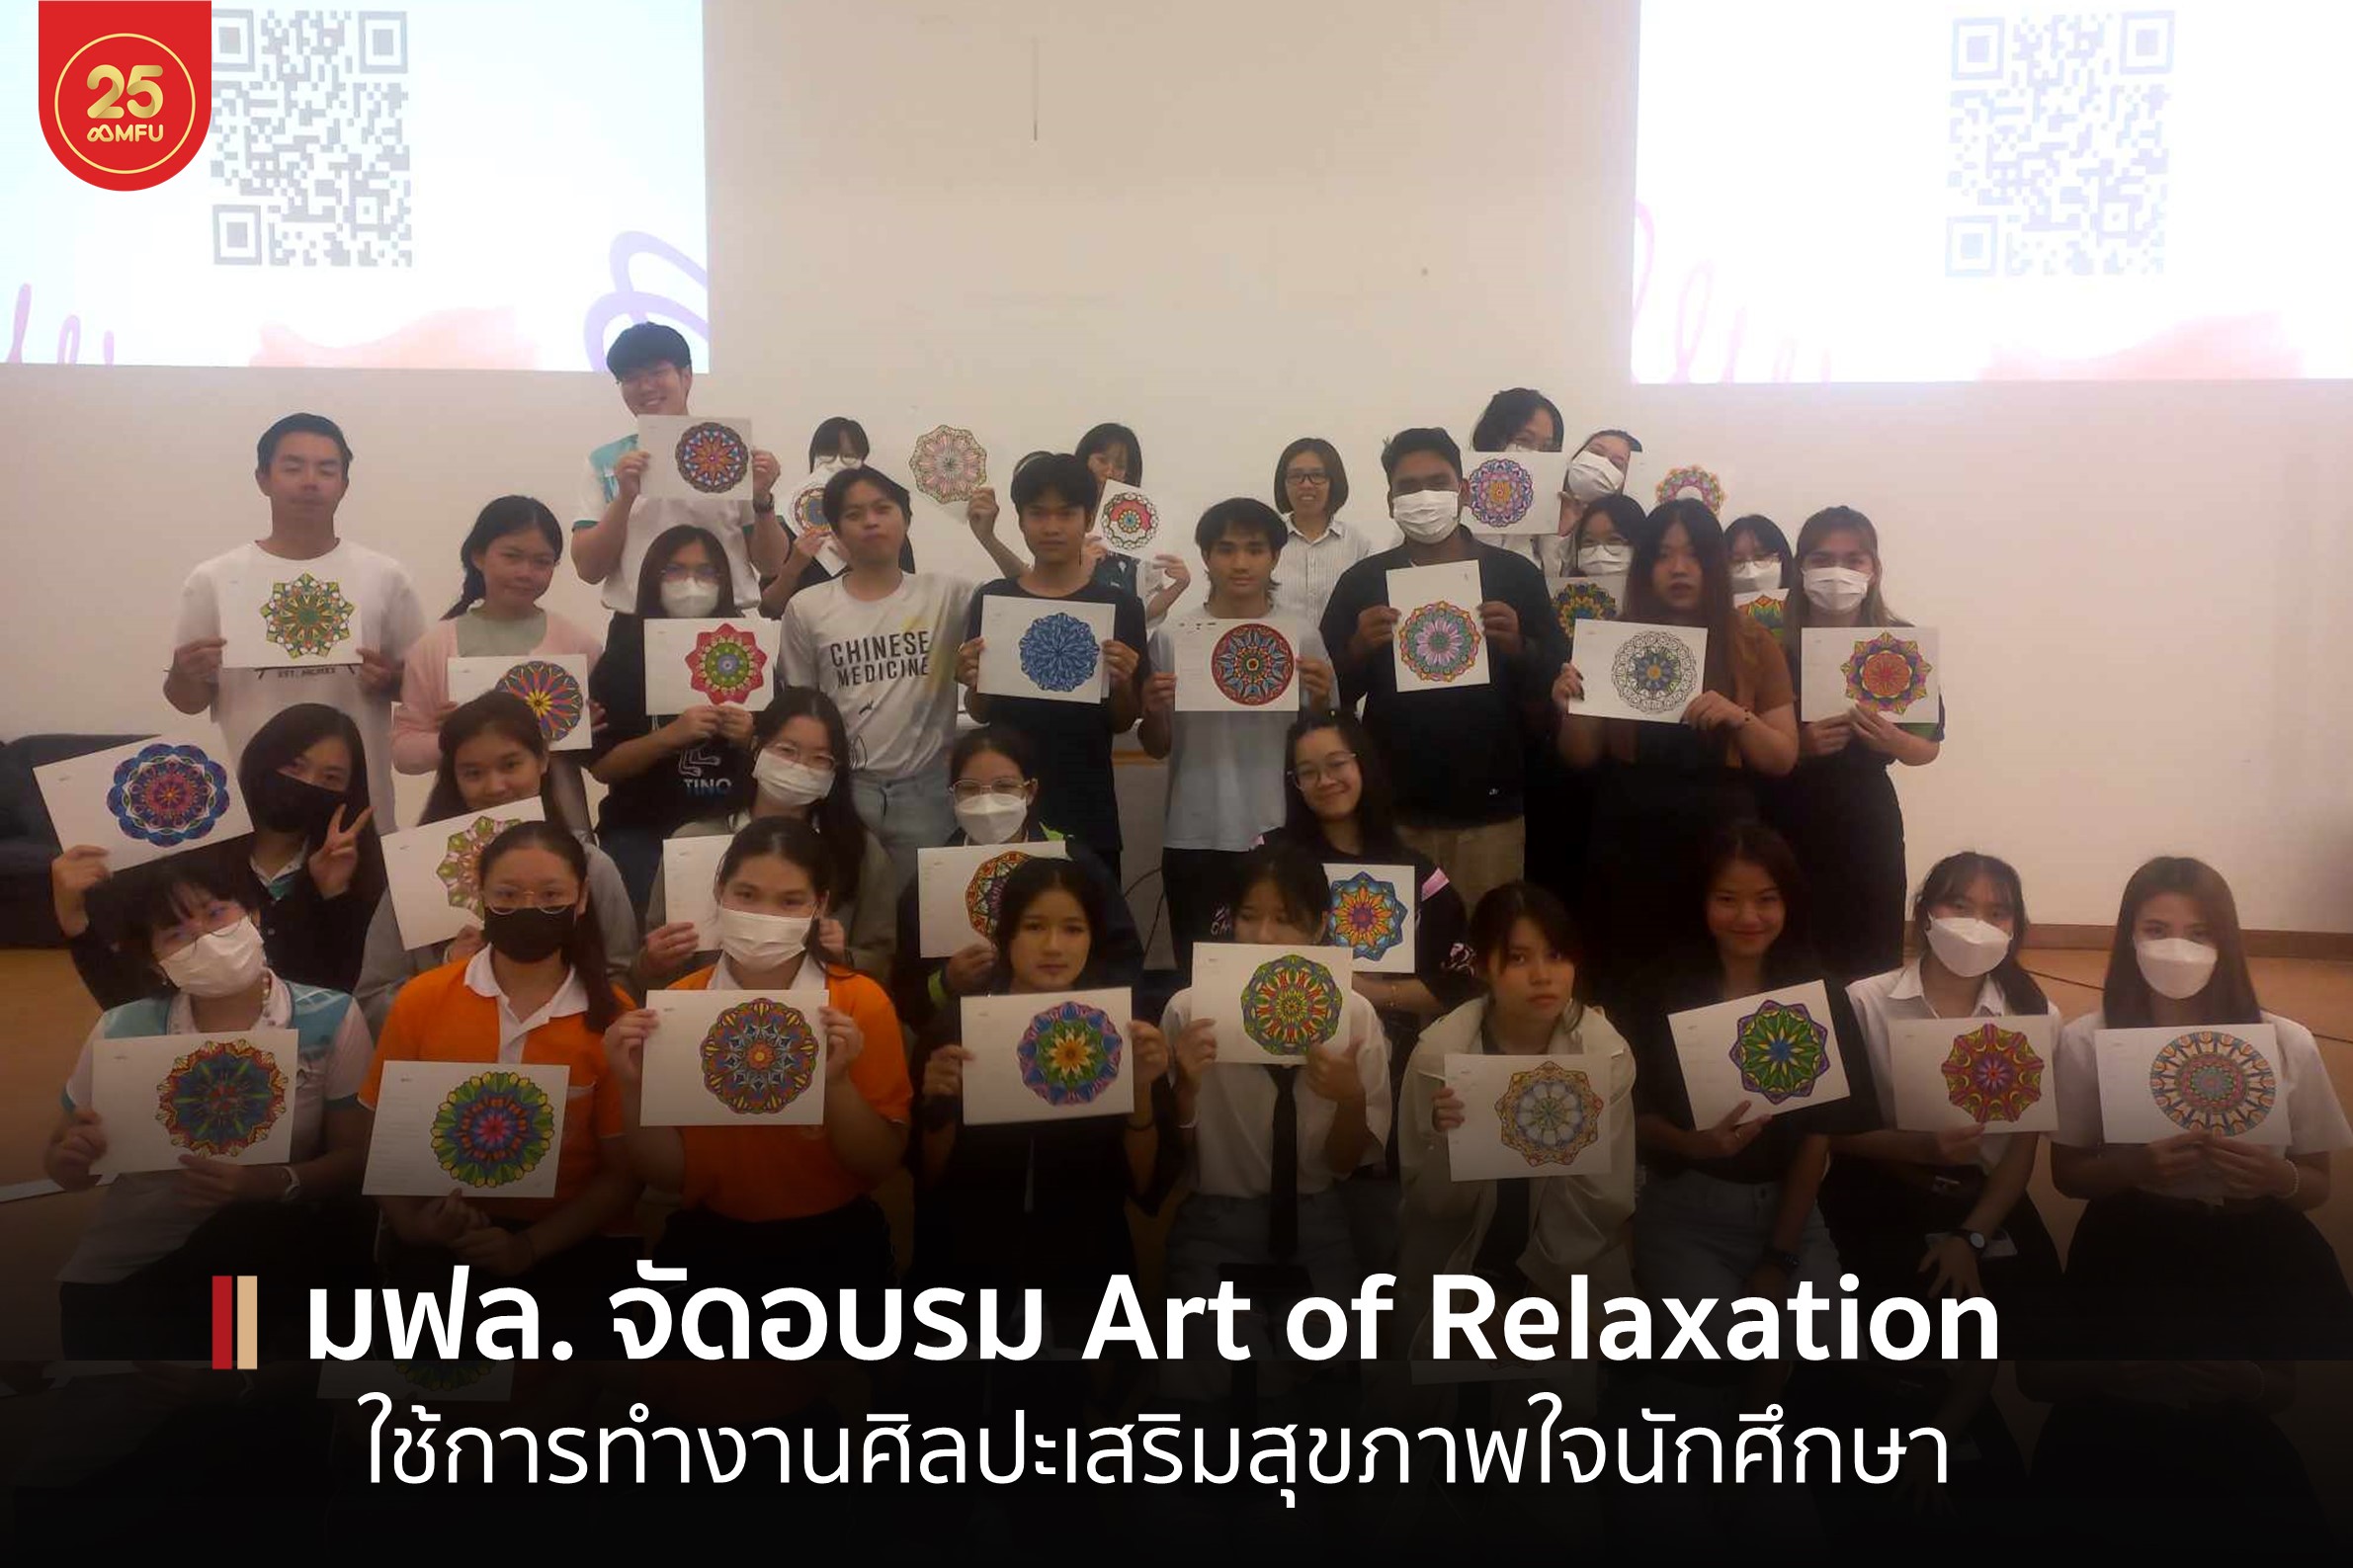 มฟล. จัดกิจกรรม Art for Relaxation ใช้การทำงานศิลปะเสริมสุขภาพใจนักศึกษา